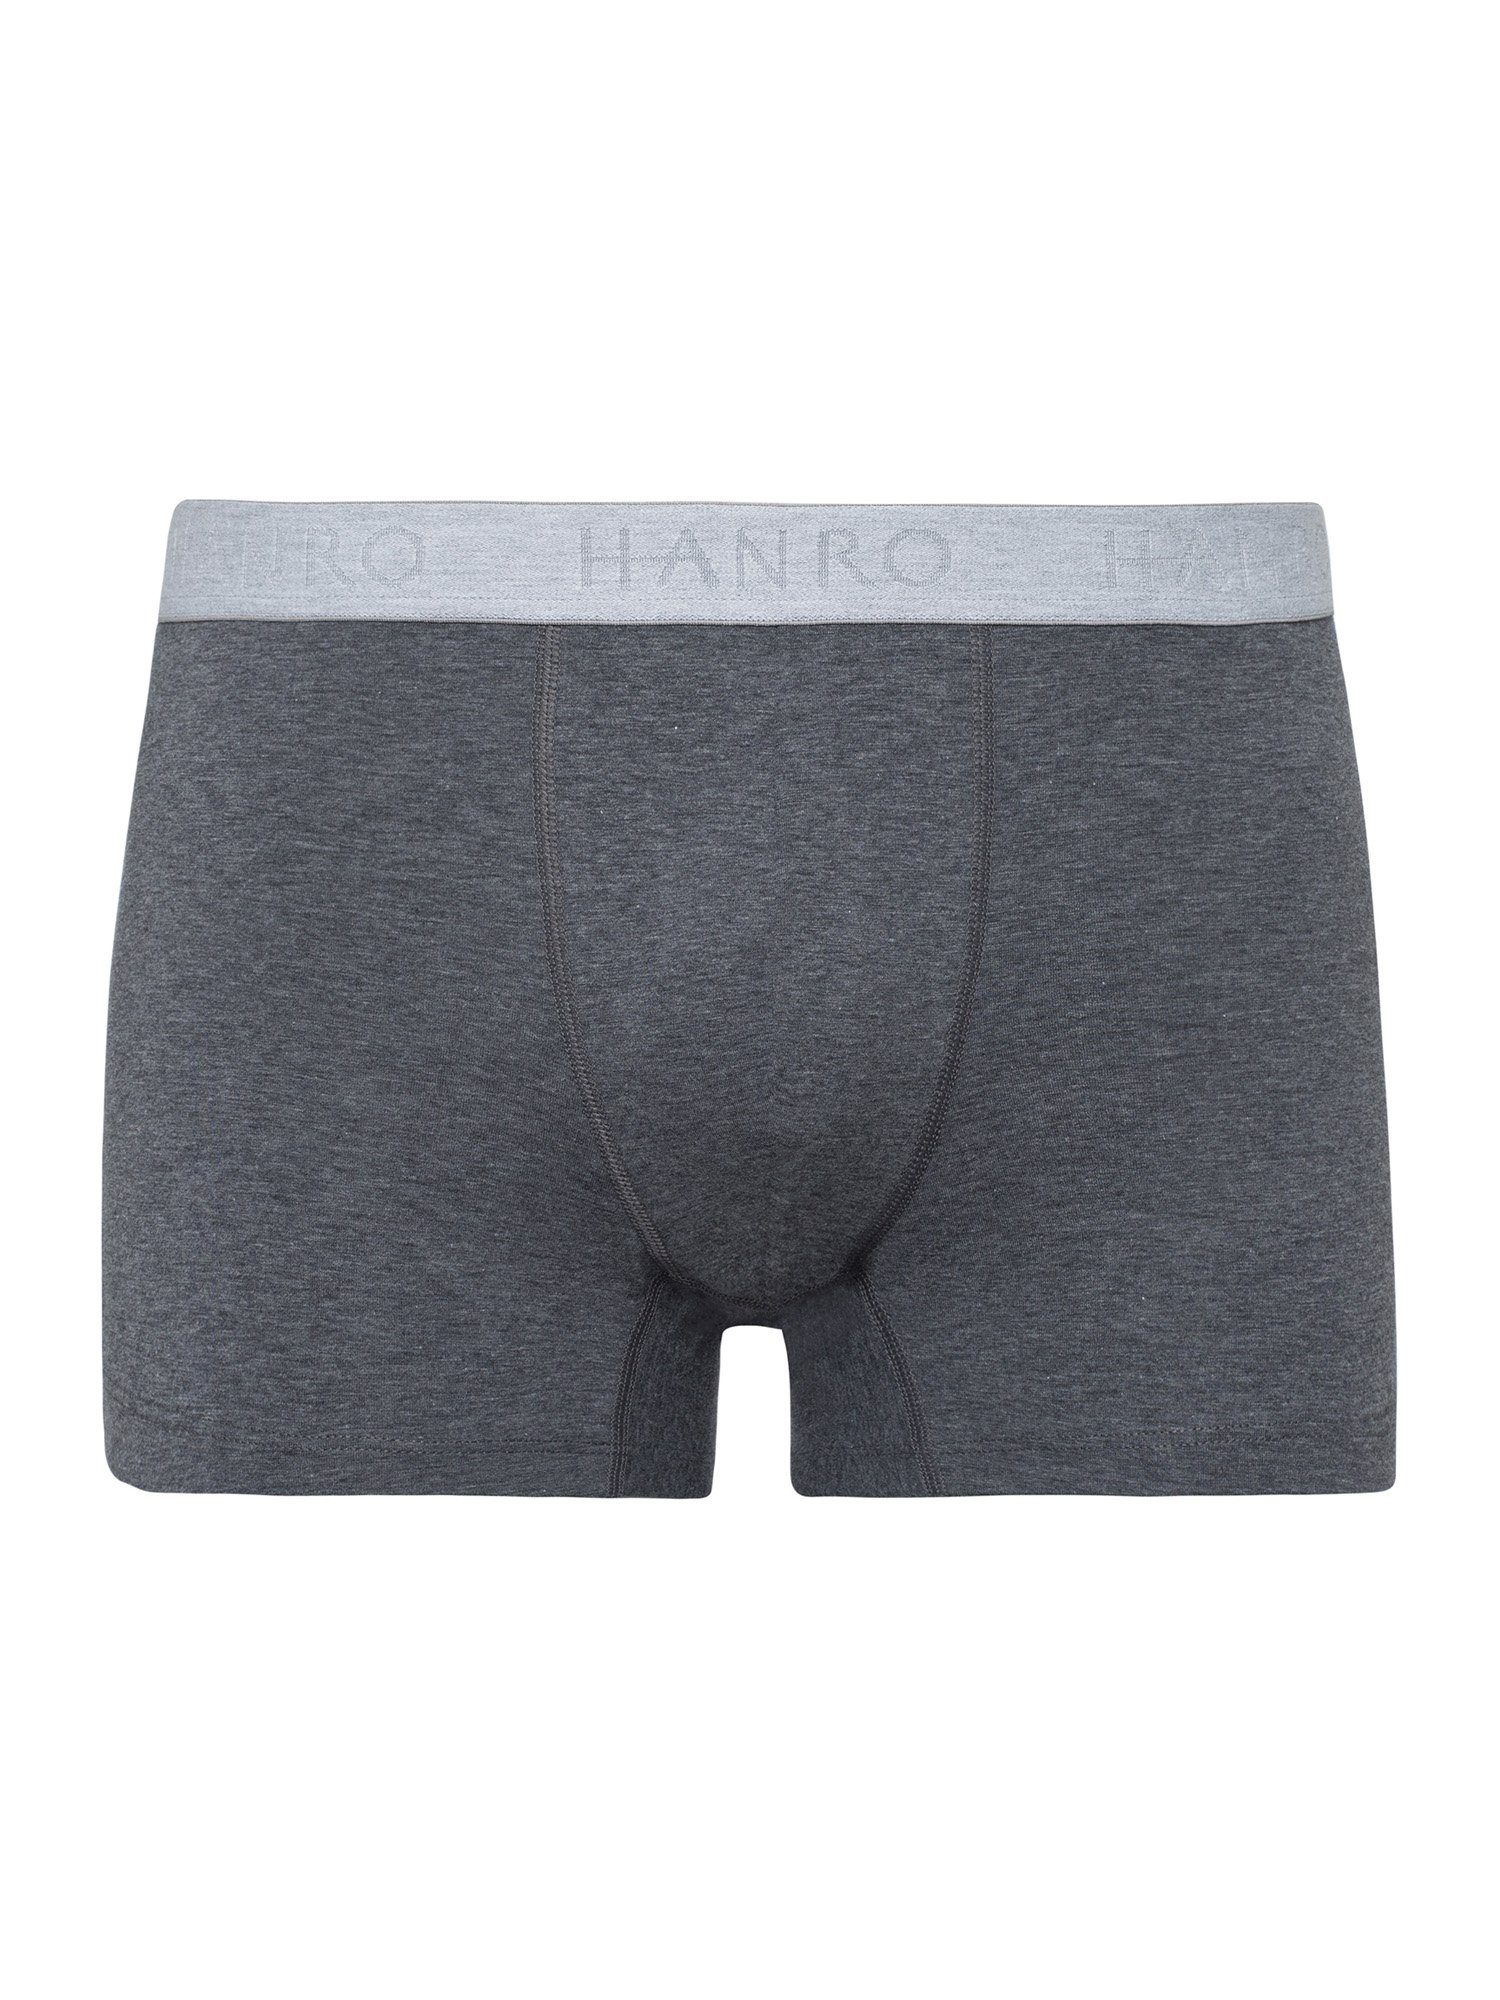 Hanro Retro Pants 2-Pack Cotton Essentials